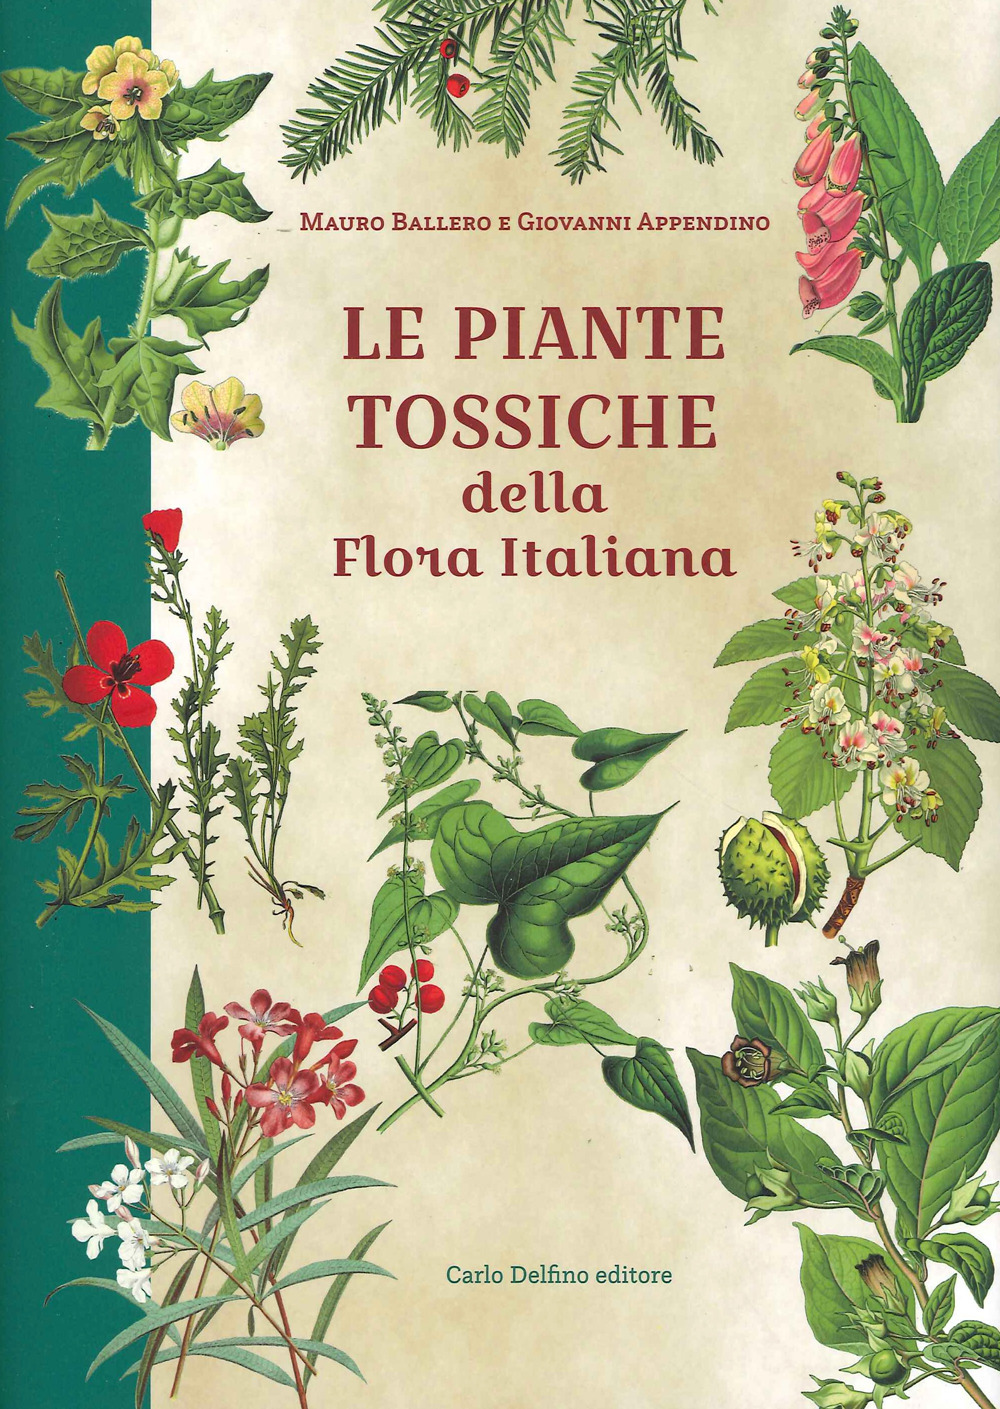 Le piante tossiche della flora italiana